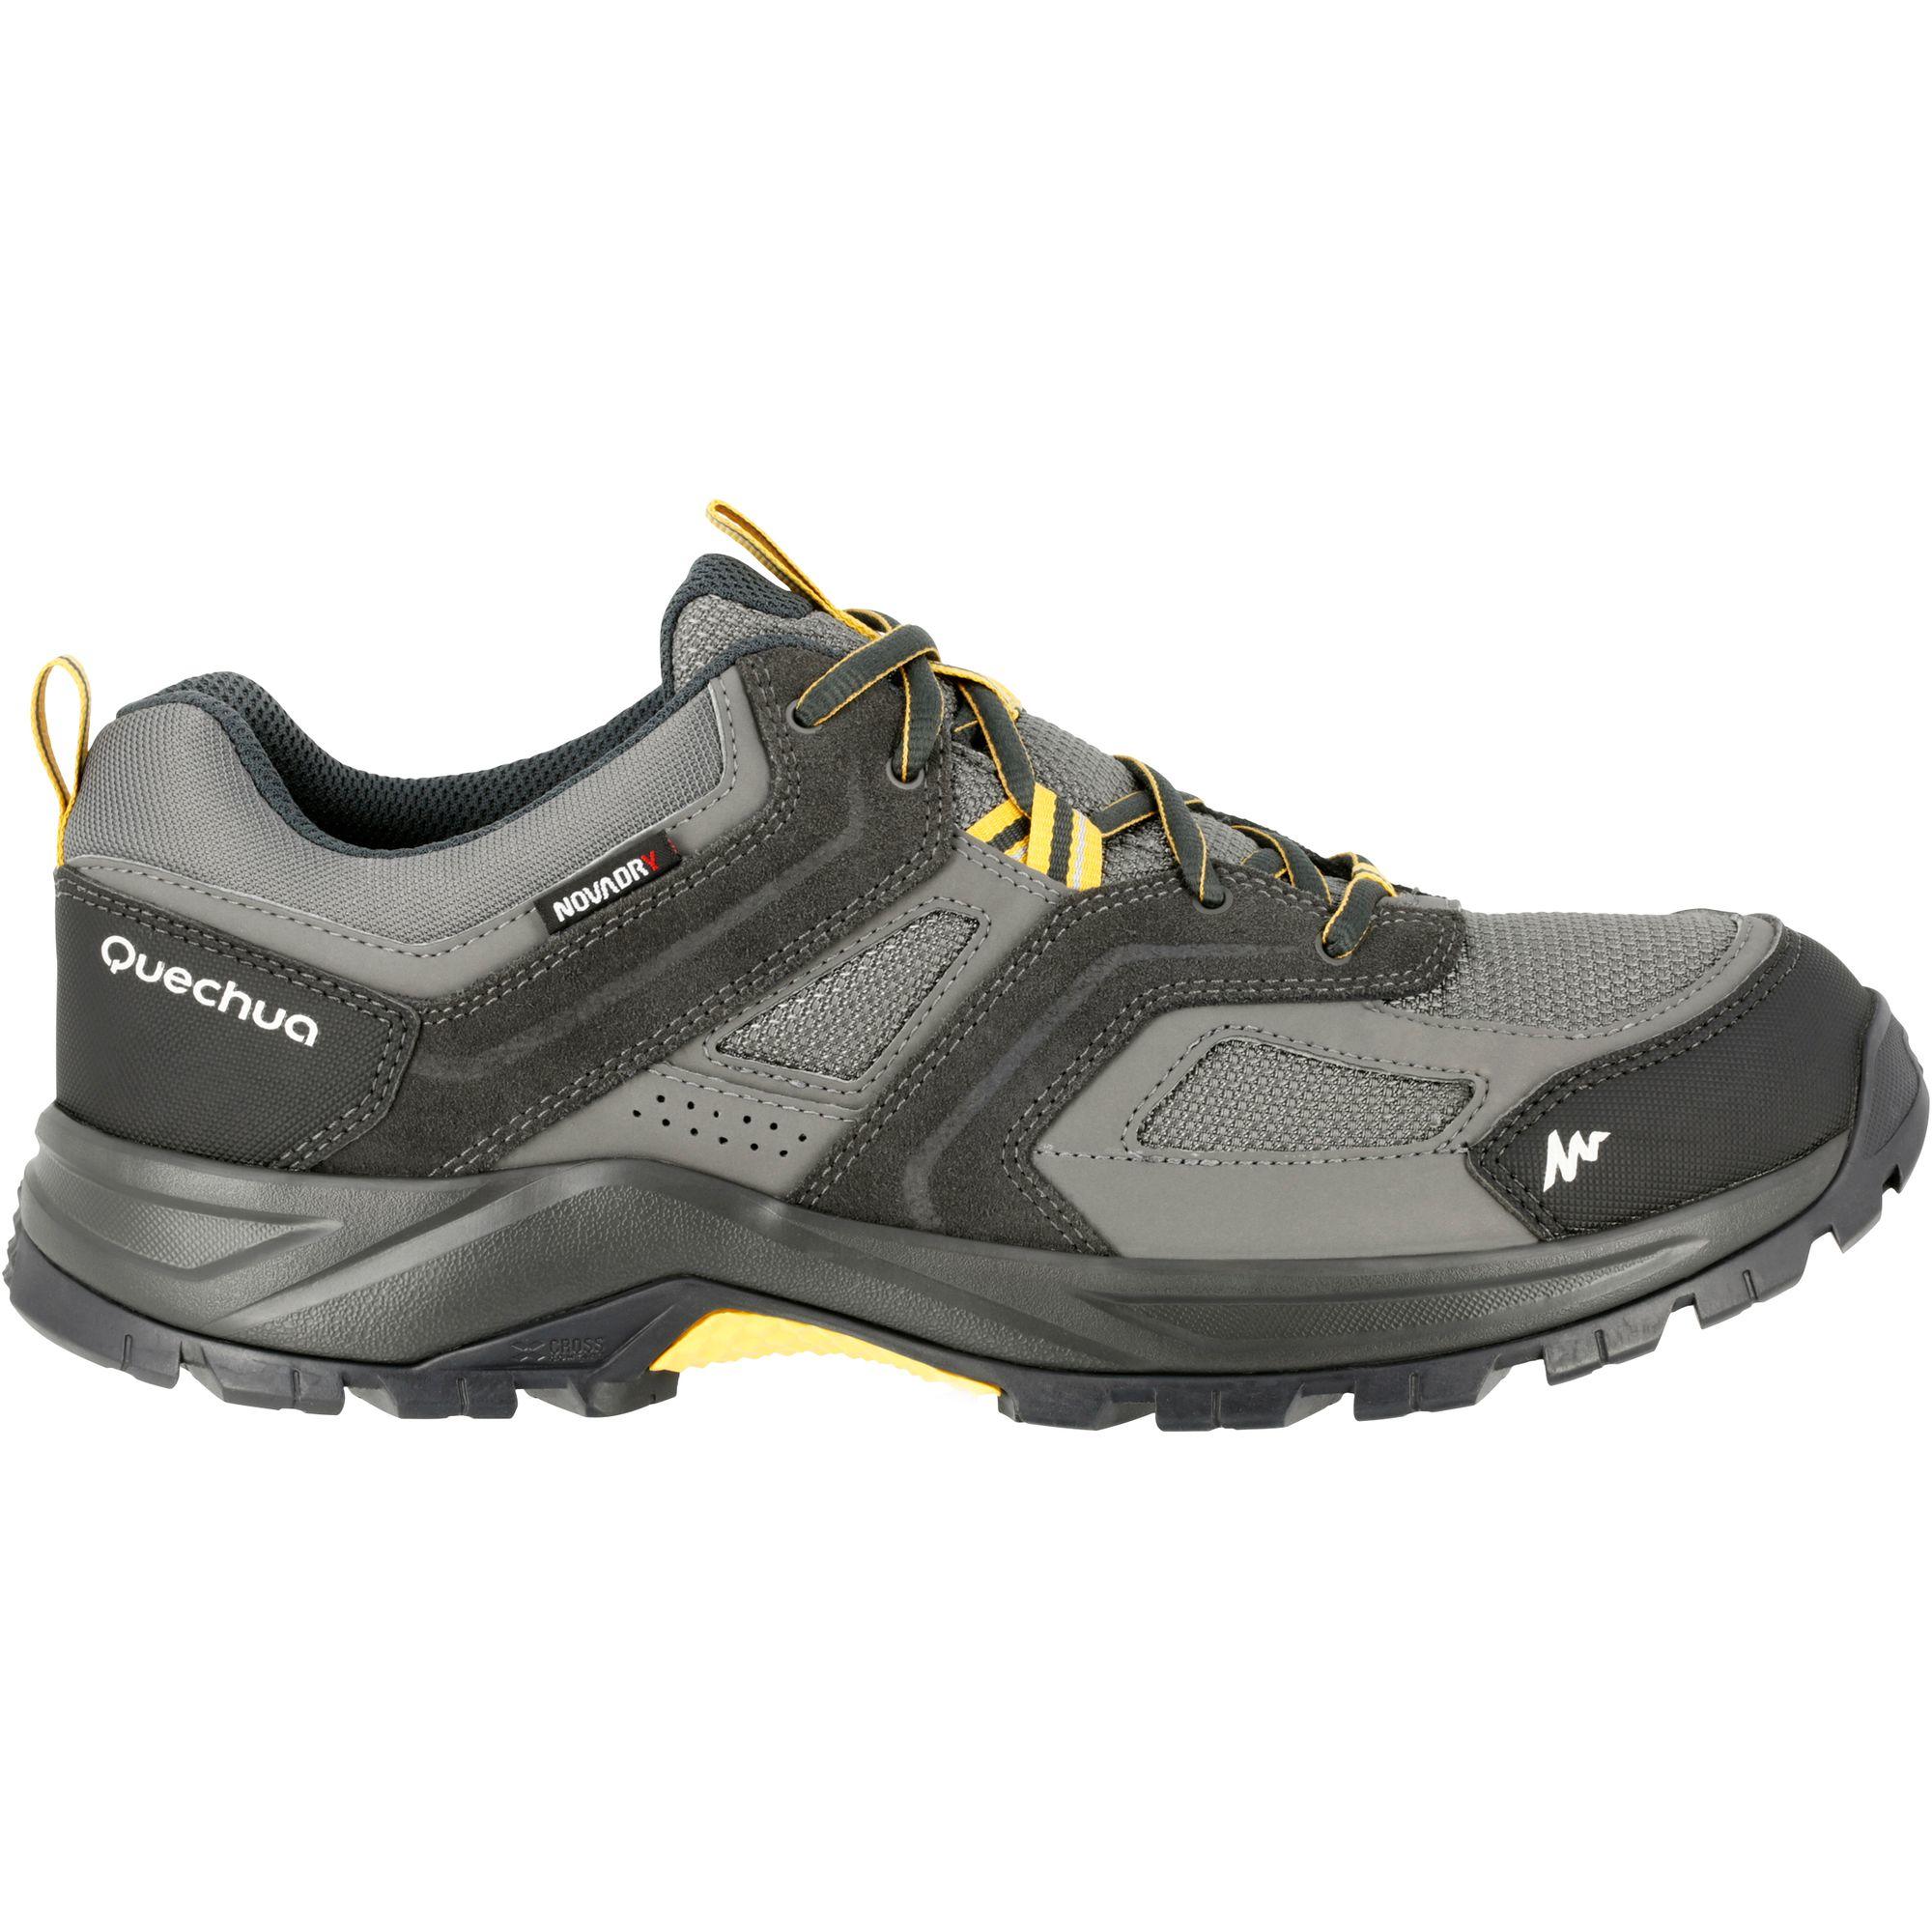 Arpenaz 100 Men's Waterproof Hiking Shoes Brown  12/13